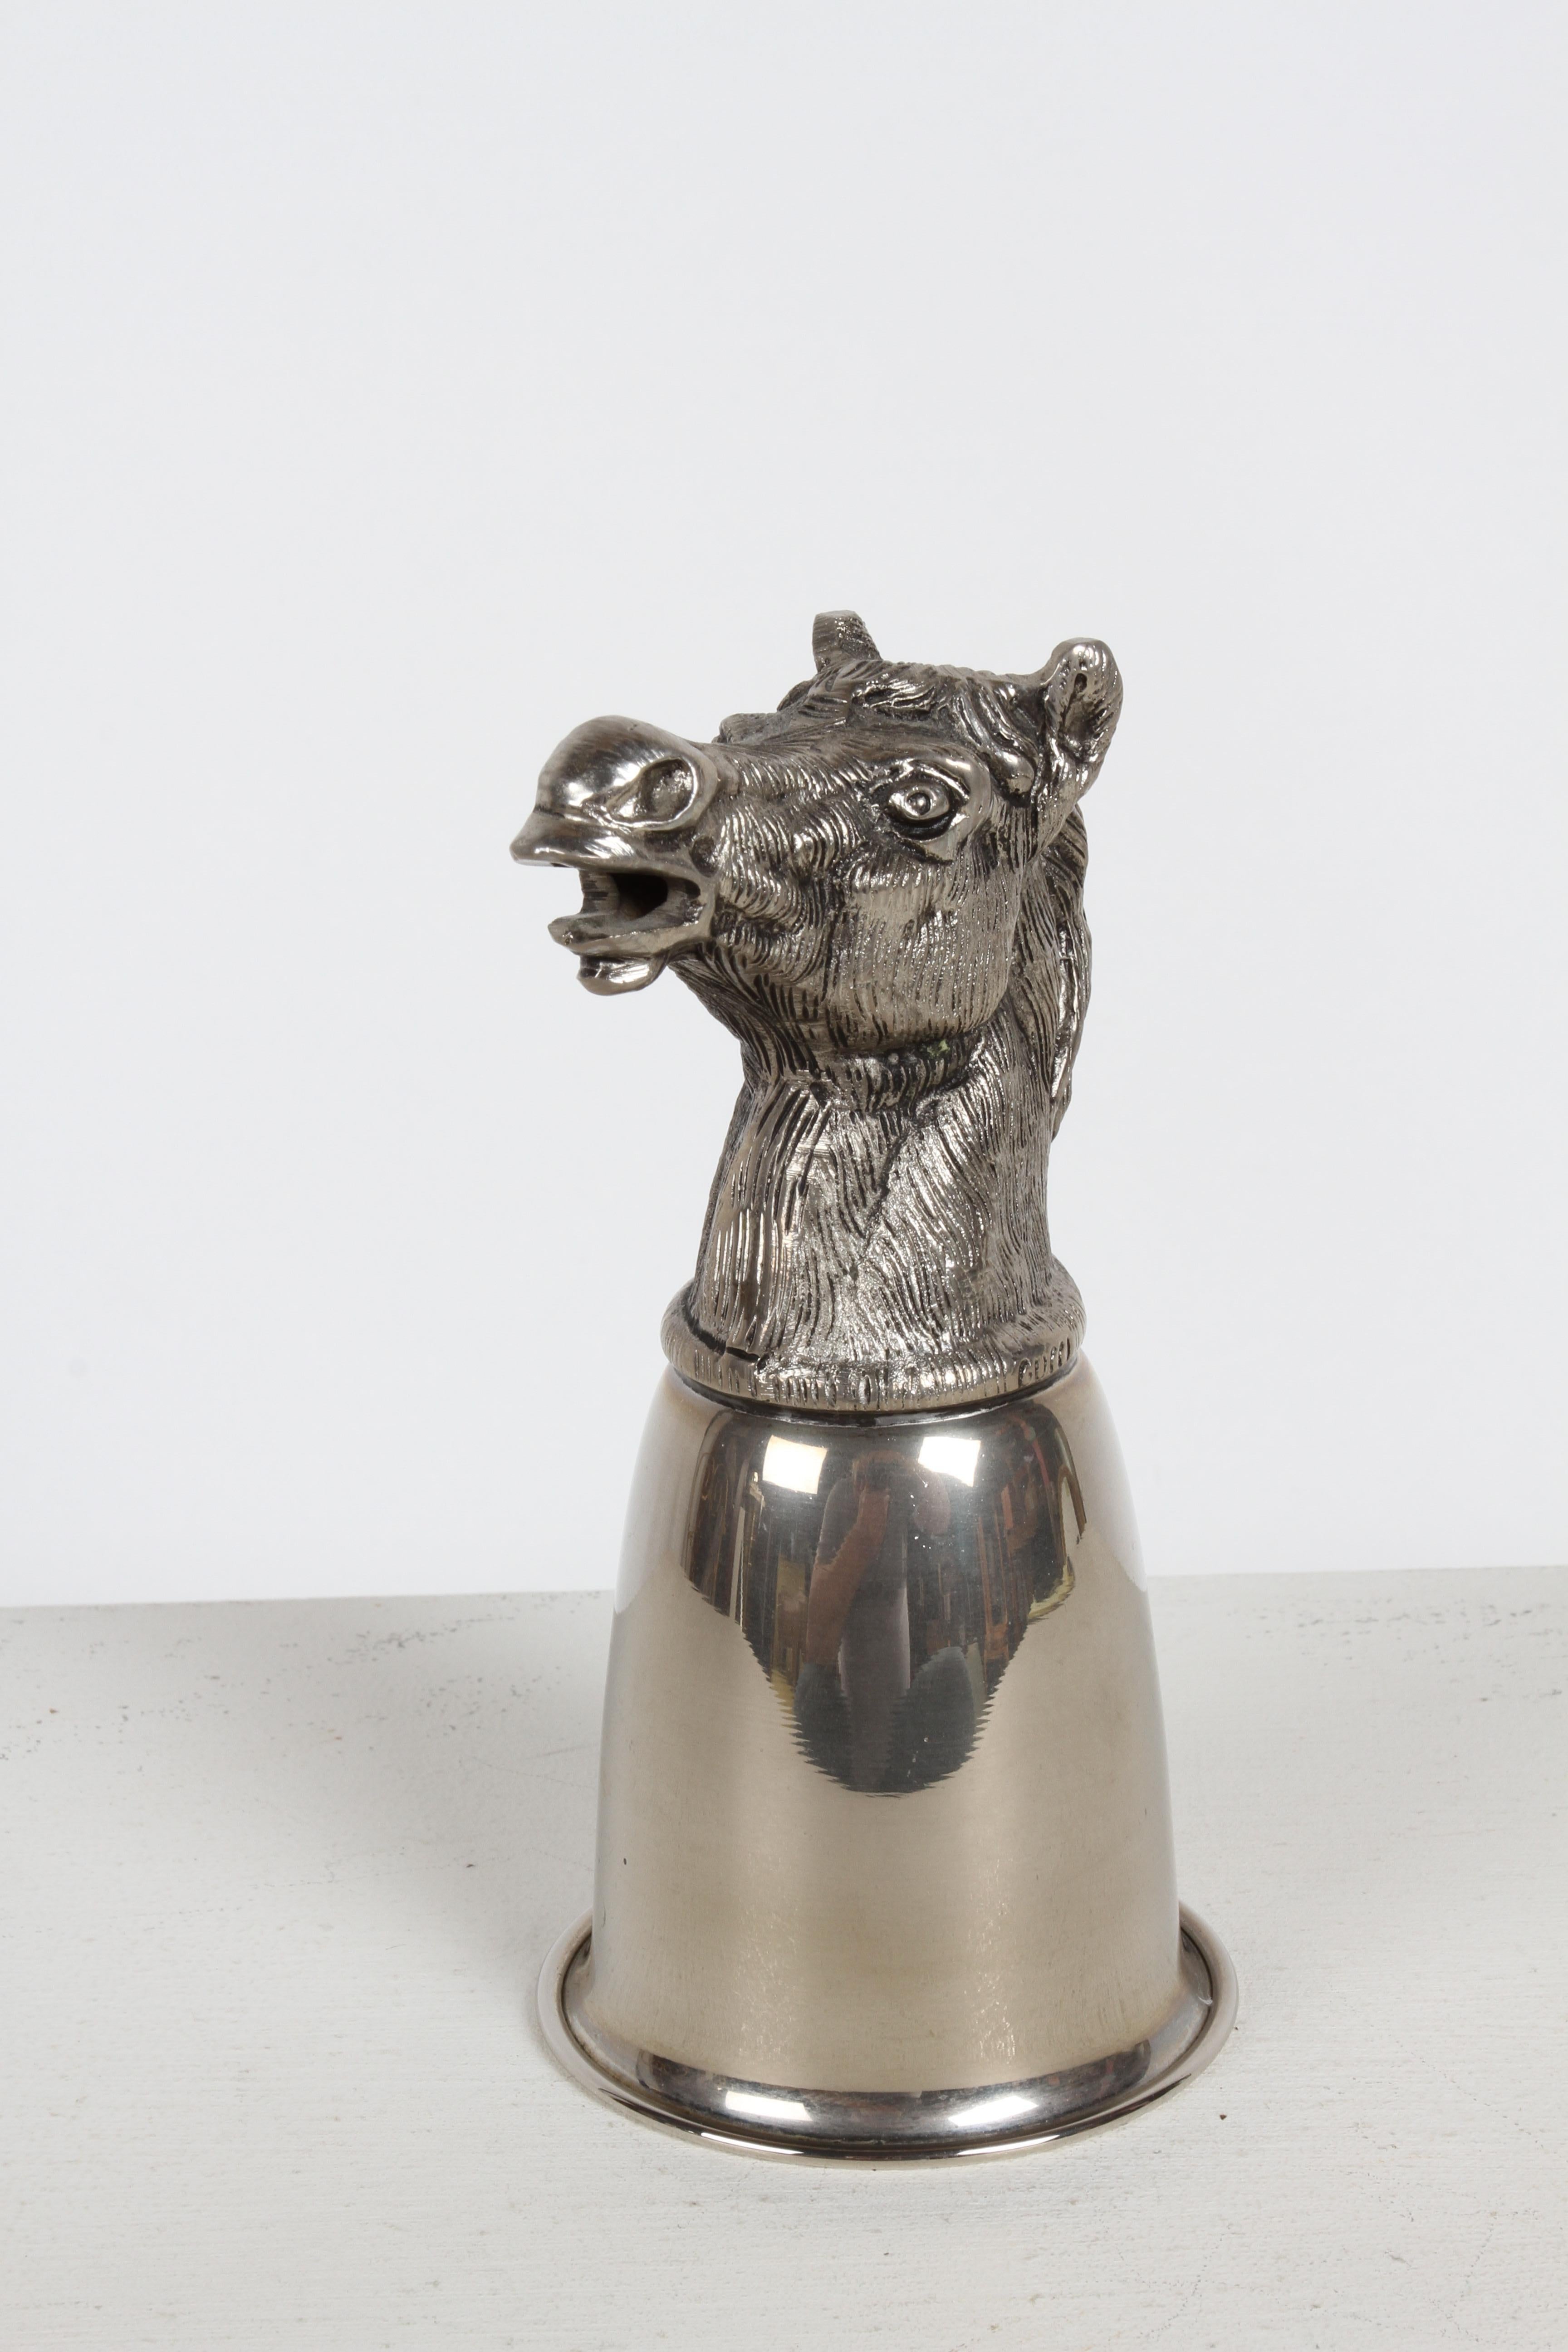 CIRCA 1970er Jahre gepunzt Gucci - Italien Versilbert Pferdekopf Jagd Reiter Steigbügel Cup. 
Dieser Trink-/Gefäßbecher kann auf dem Kopf ruhen oder umgedreht, mit dem Kopf deutlich sichtbar, als Skulptur auf Ihrer Bar ausgestellt werden. In gutem